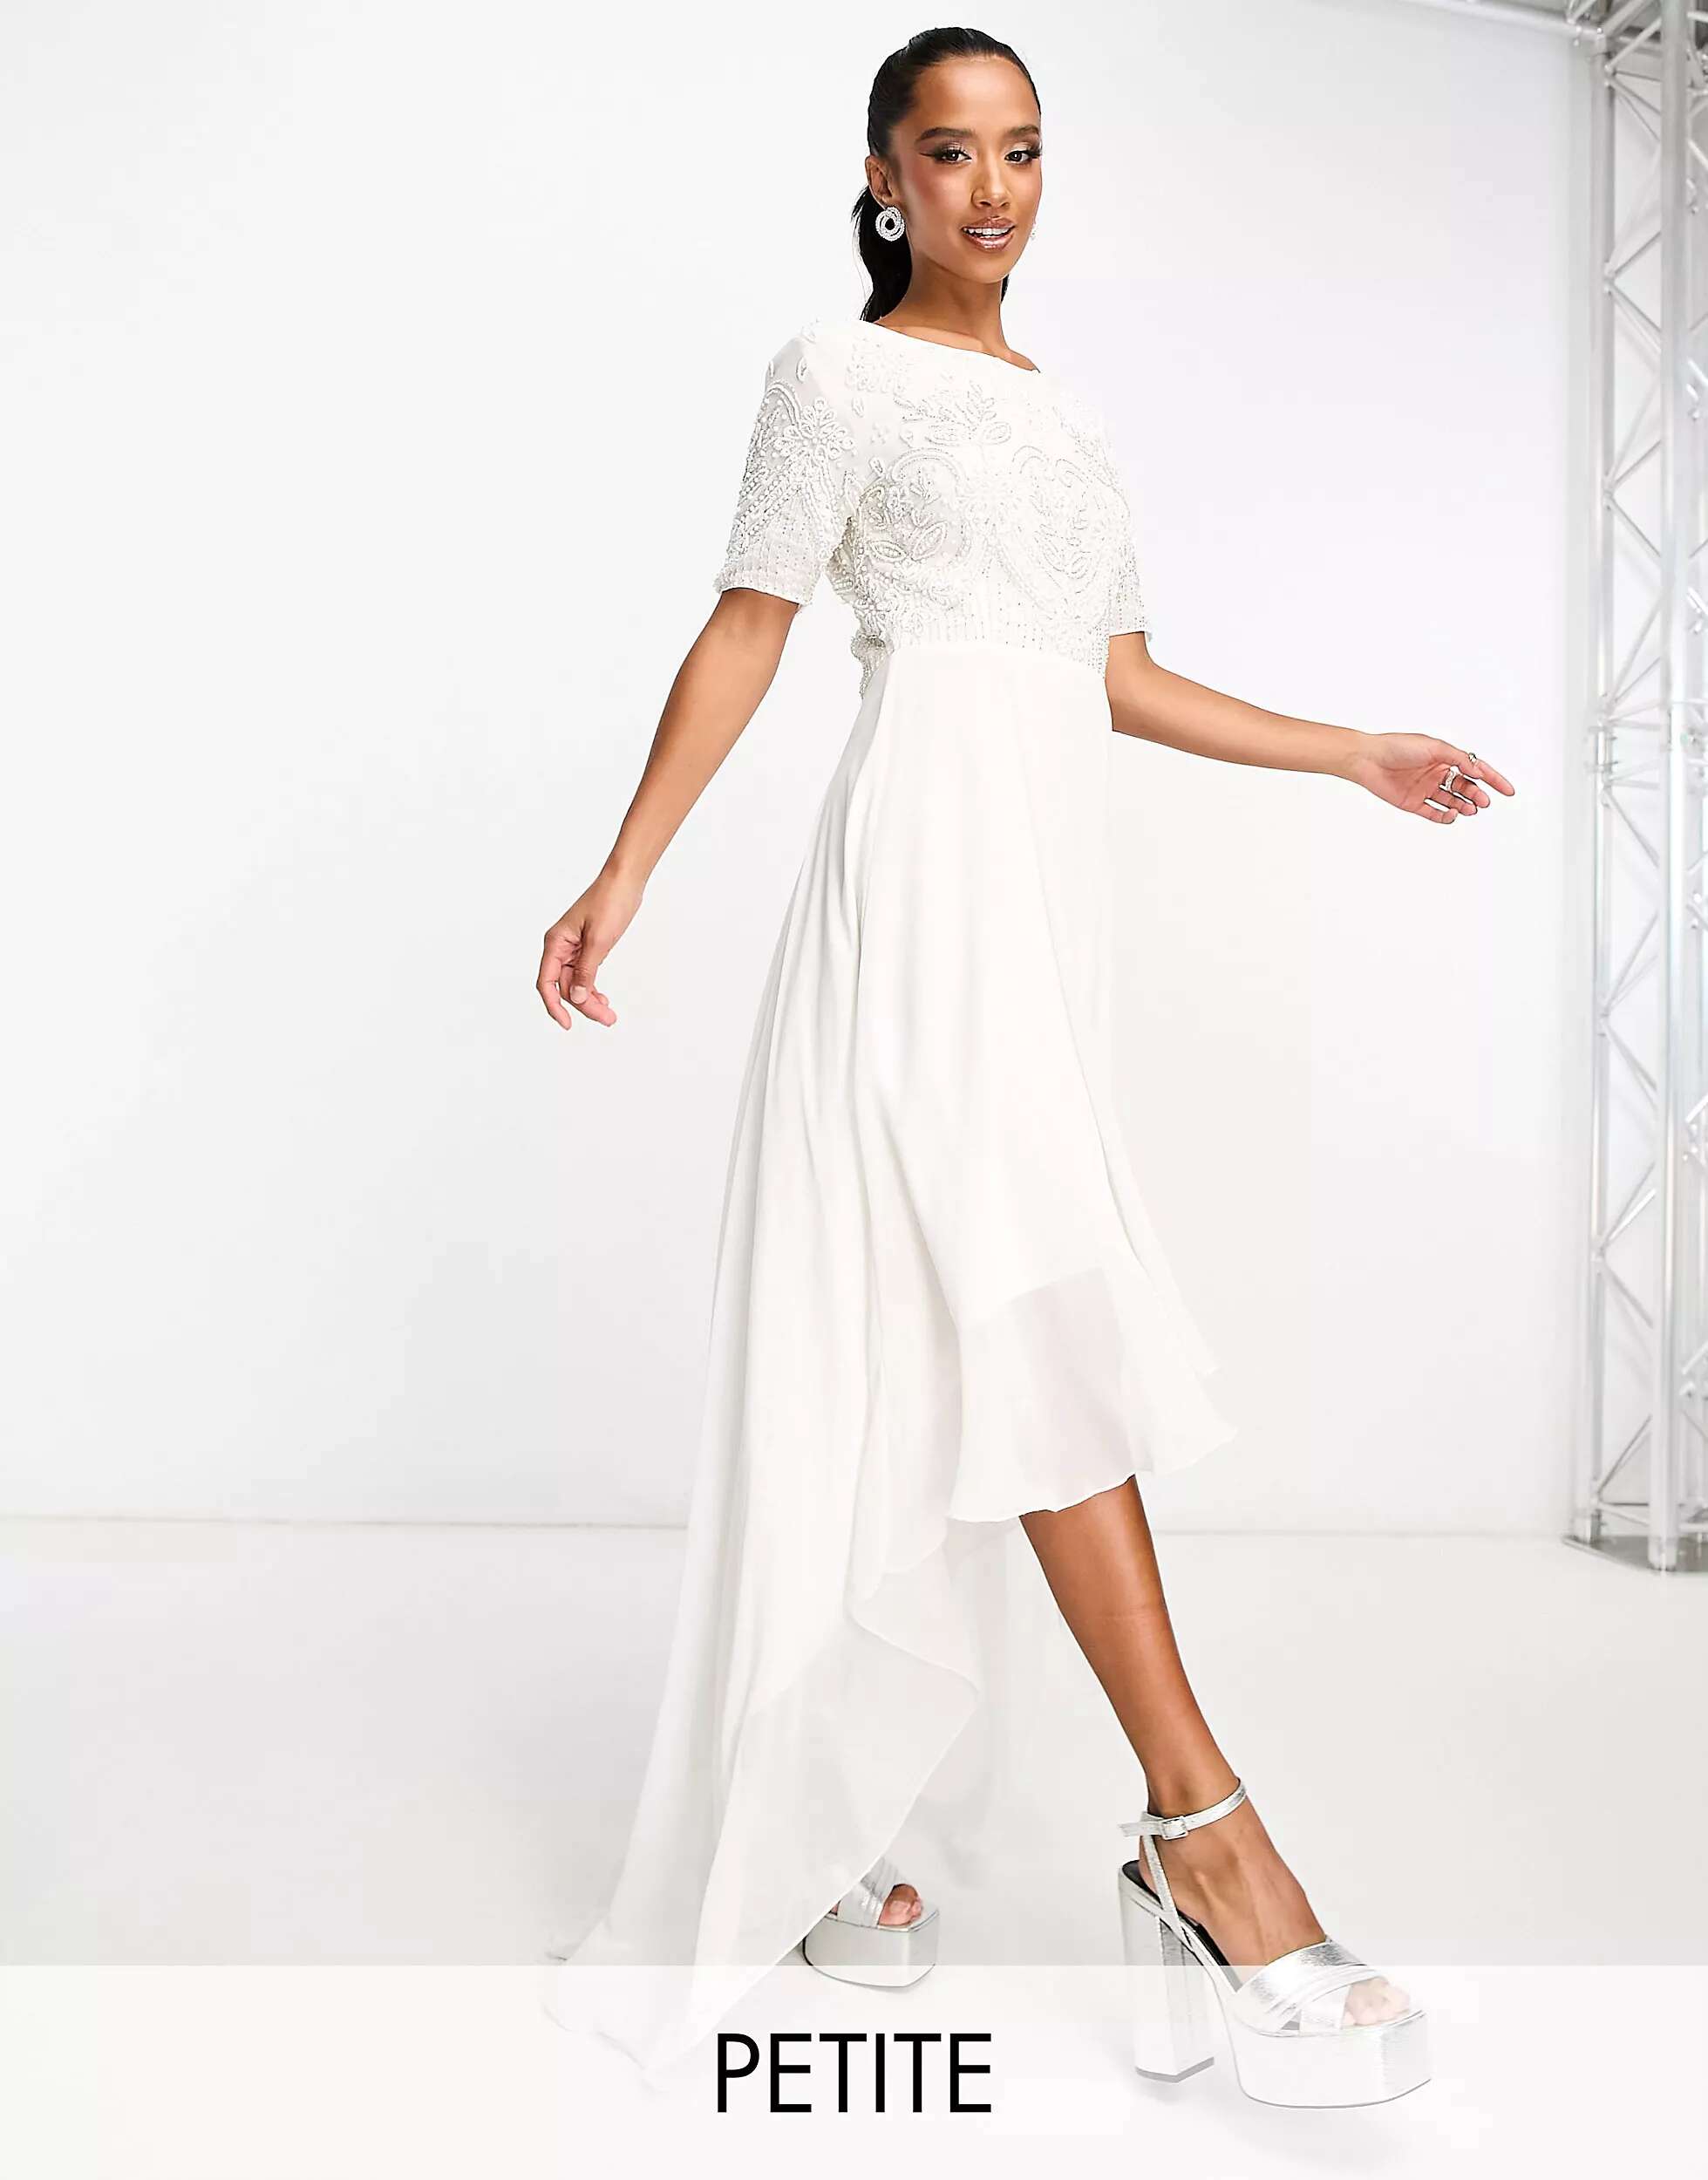 

Beauut Petite Bridal платье 2 в 1 с украшением и высоким низким подолом цвета слоновой кости